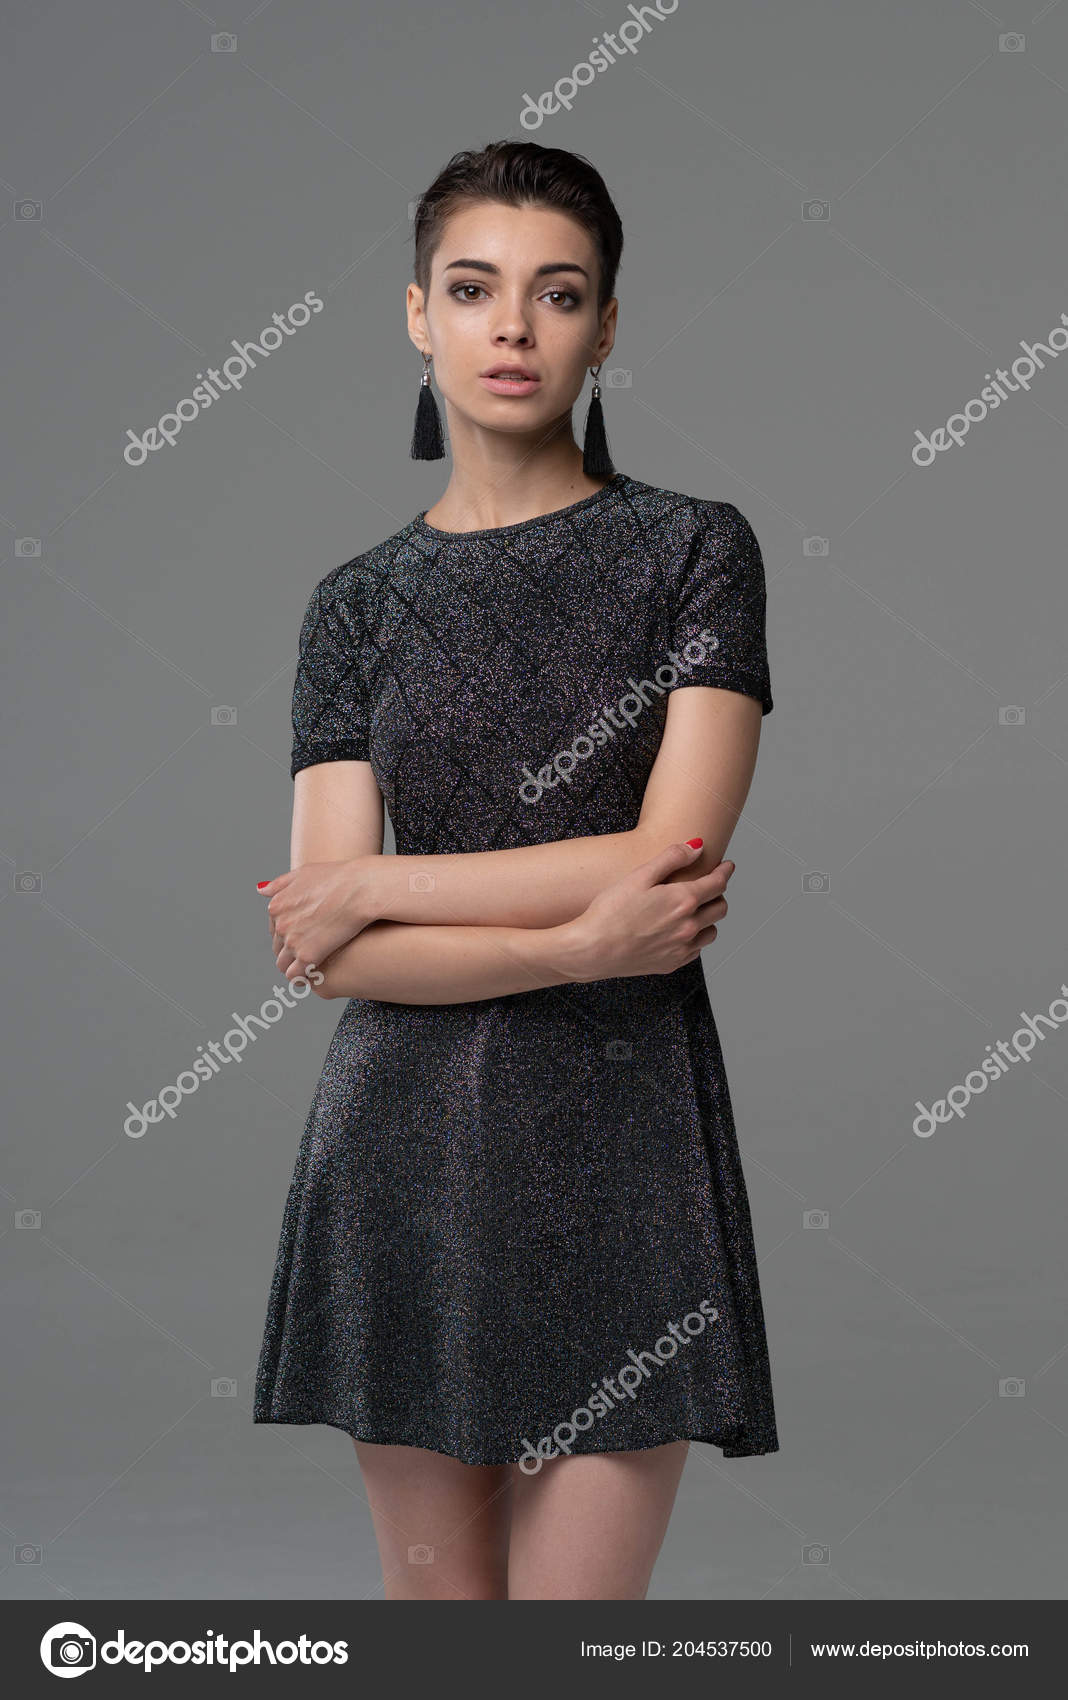 https://st4.depositphotos.com/10086424/20453/i/1600/depositphotos_204537500-stock-photo-young-beautiful-girl-posing-studio.jpg